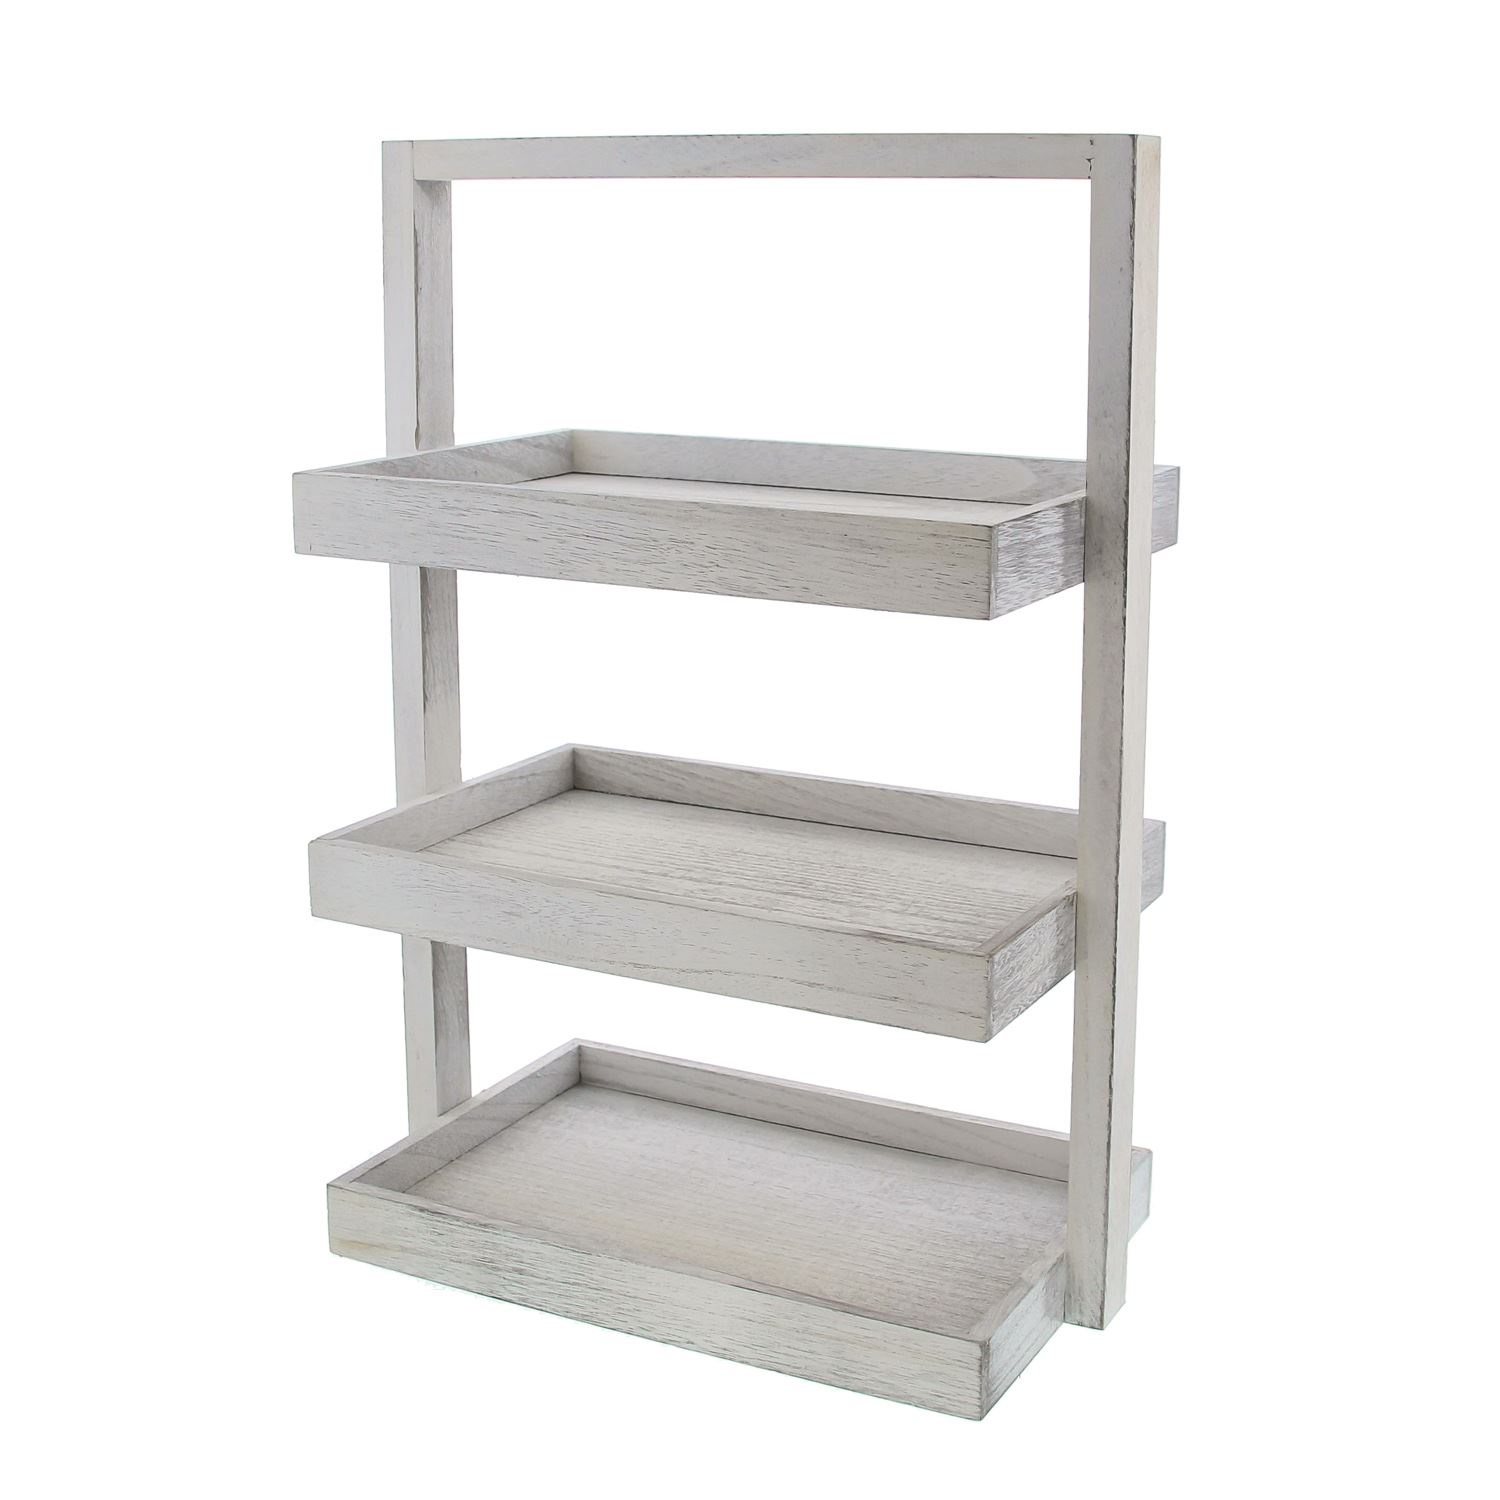 Wooden etagere rectangular gray - 365*510*215mm - 1 piece